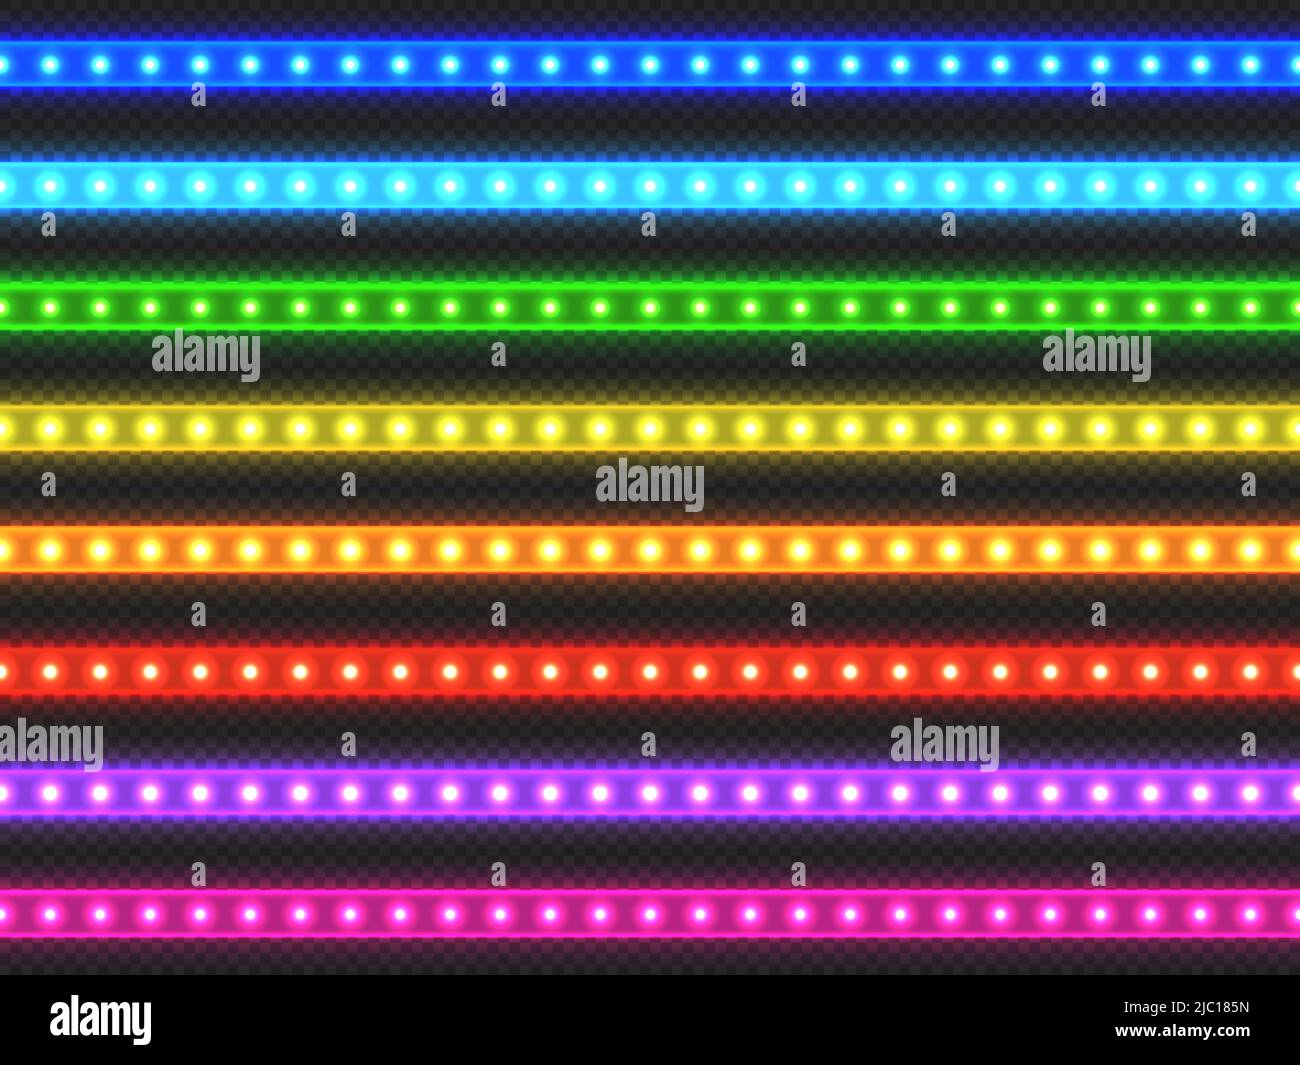 LED-Lichtstreifen. Realistisches buntes Band mit leuchtendem Effekt, grün rot blau gelb violett und violett beleuchtetes Streifen-Set. Vektor-Lichtdekoration Stock Vektor